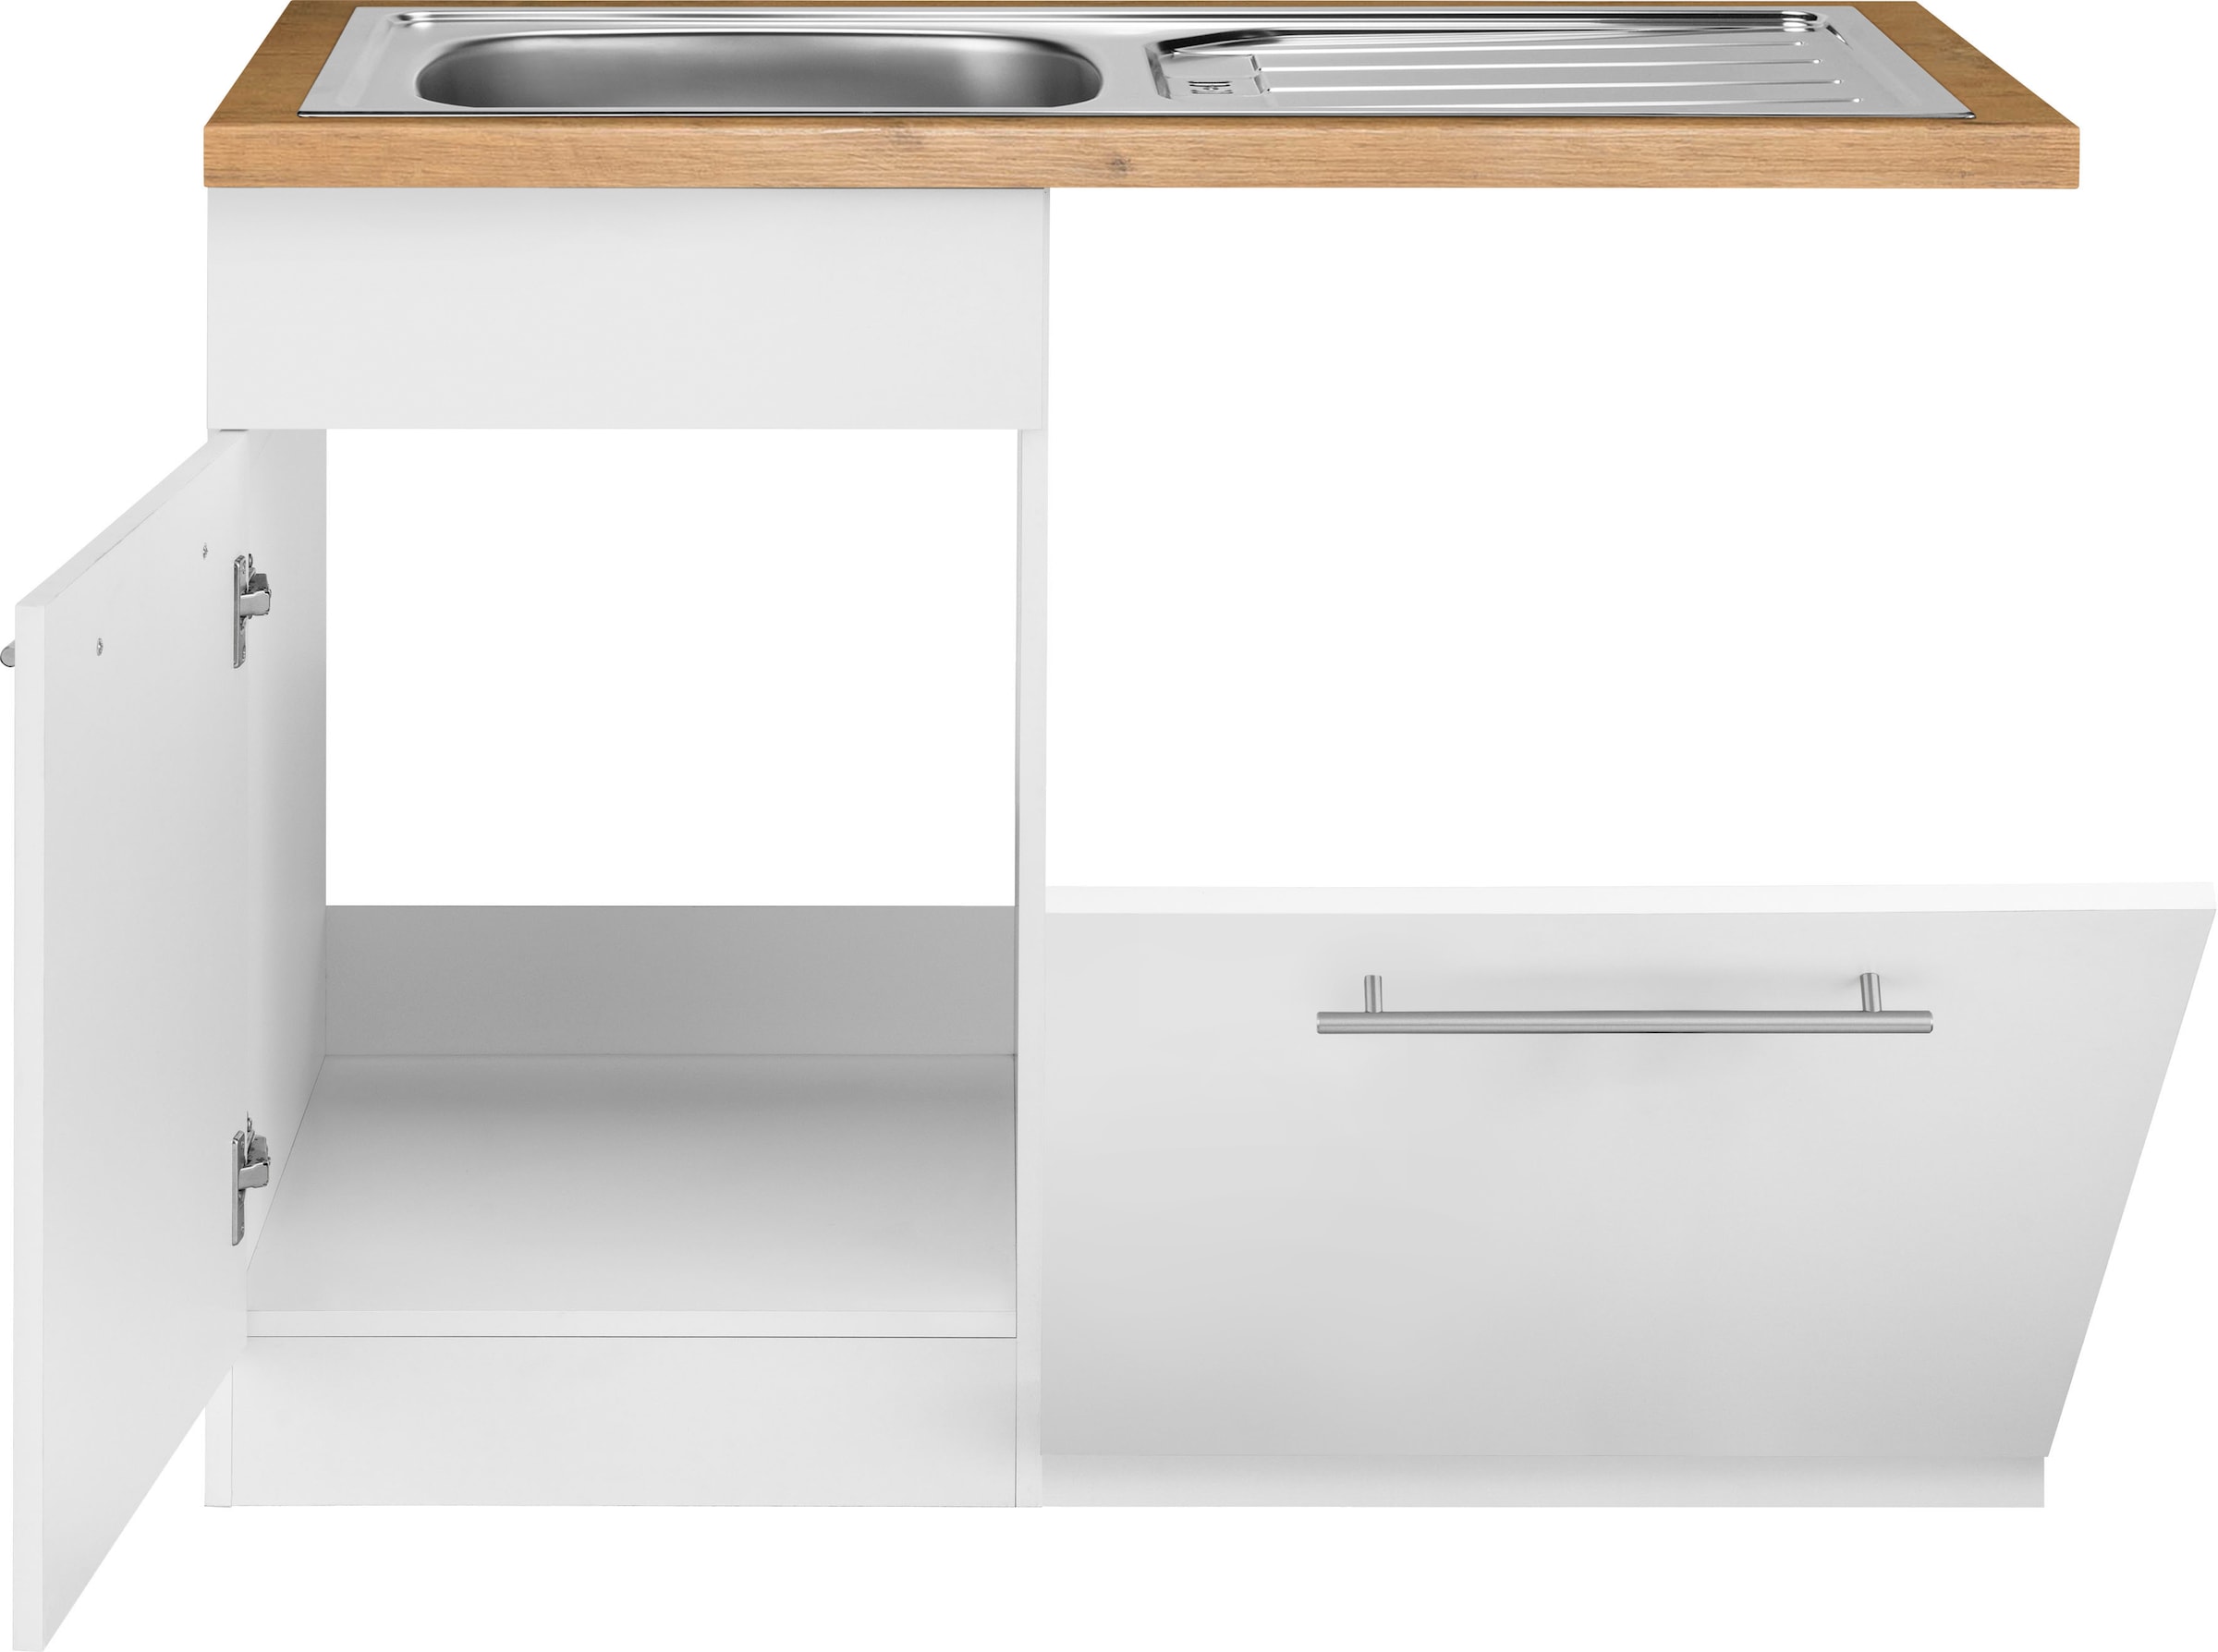 wiho Küchen Spülenschrank »Unna«, 110 cm breit, inkl. Tür/Sockel/Griff für  Geschirrspüler bequem bestellen | Spülenschränke